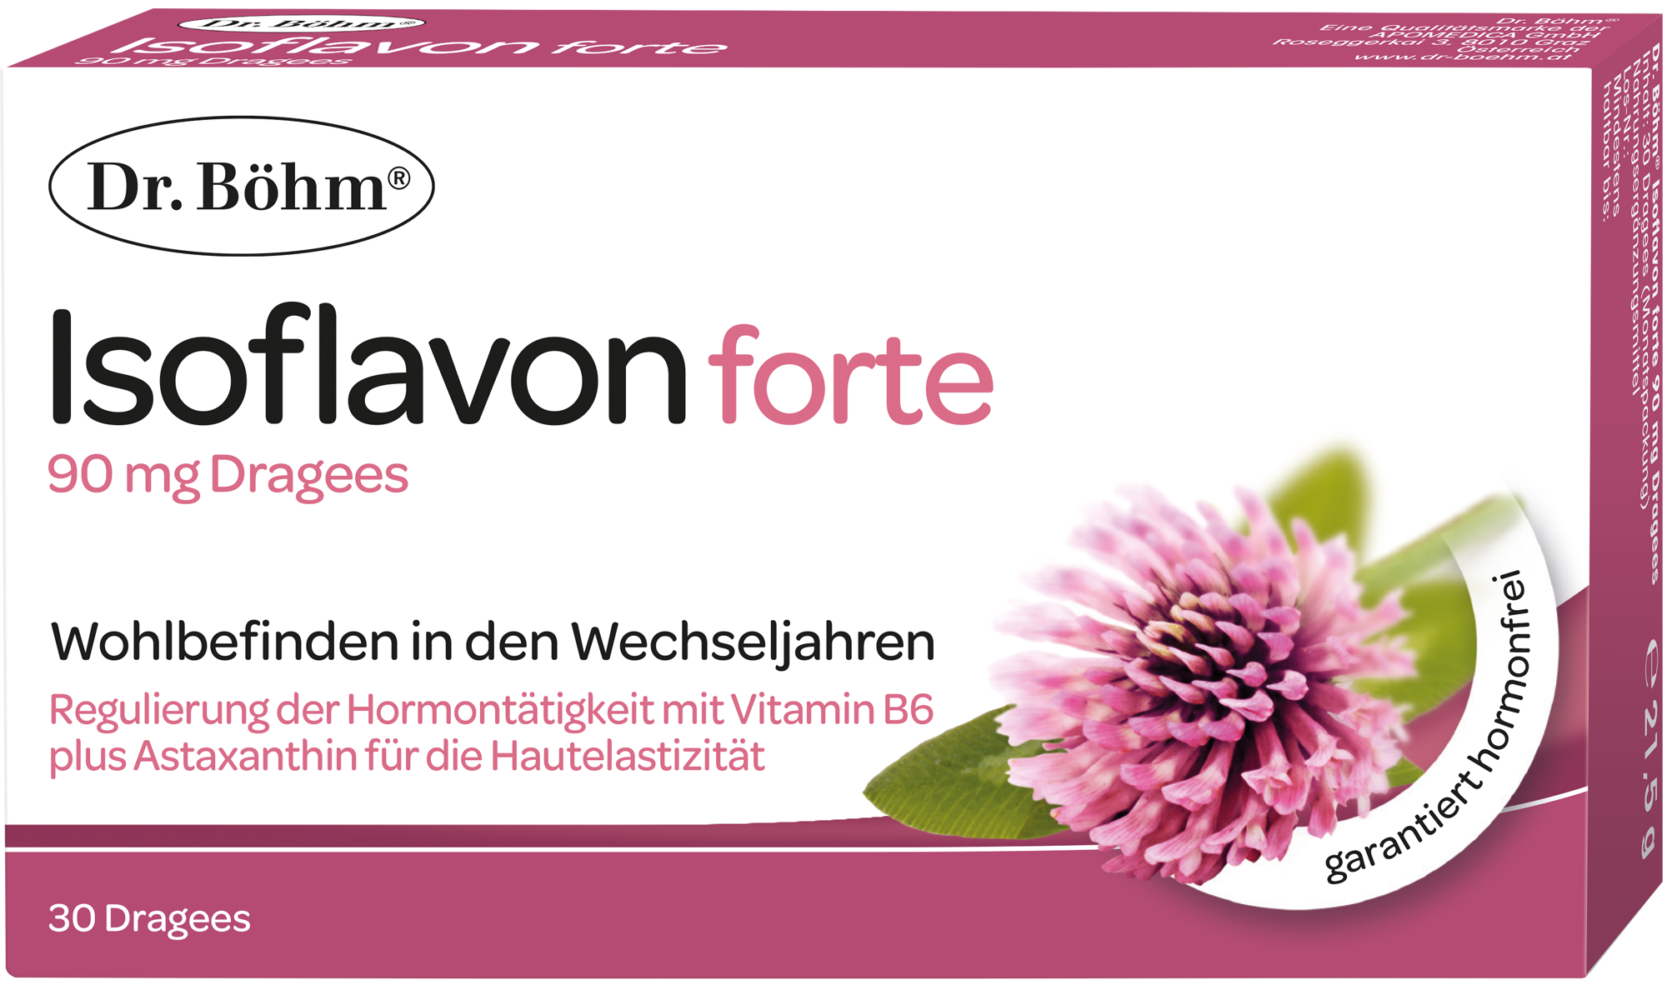 Dr. Böhm® Isoflavon forte 90 mg - Wohlbefinden in den Wechseljahren